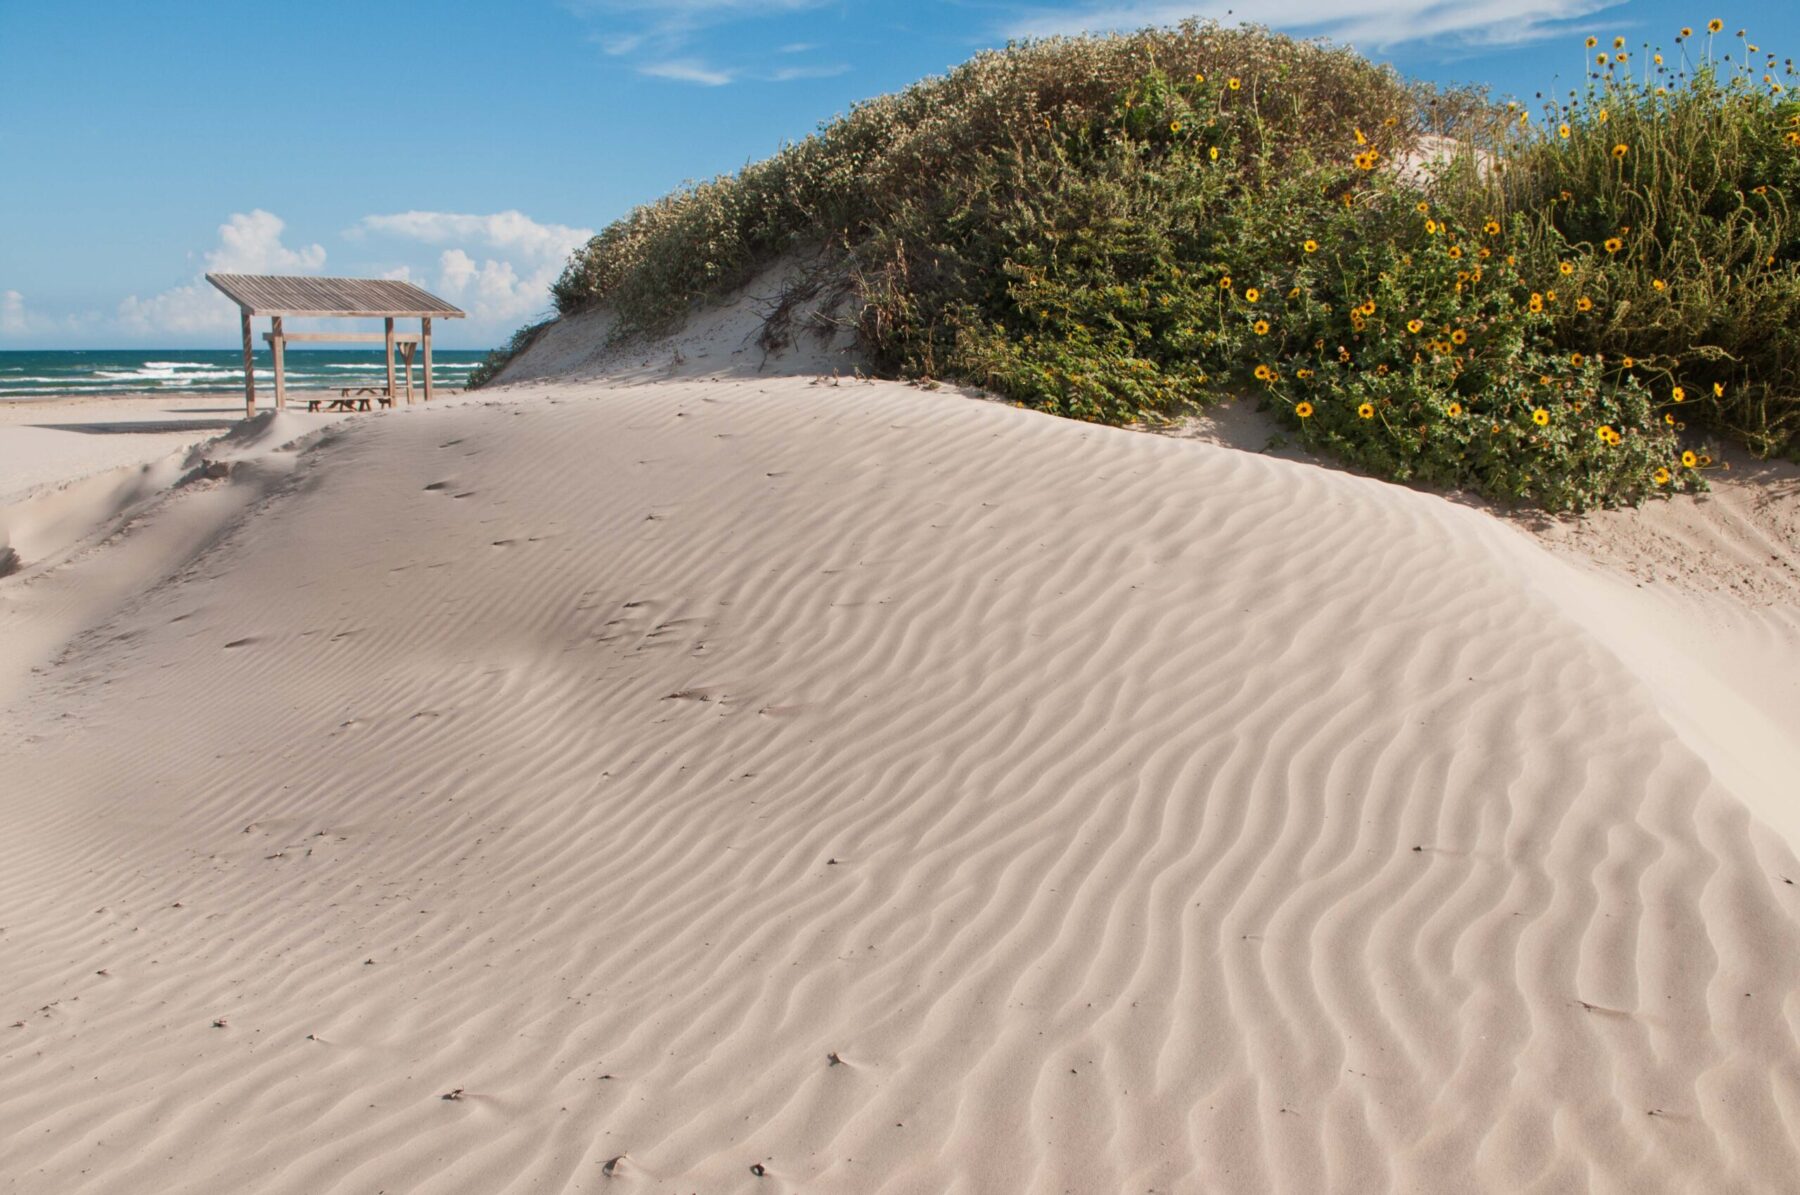 Color photo of a sandy beach